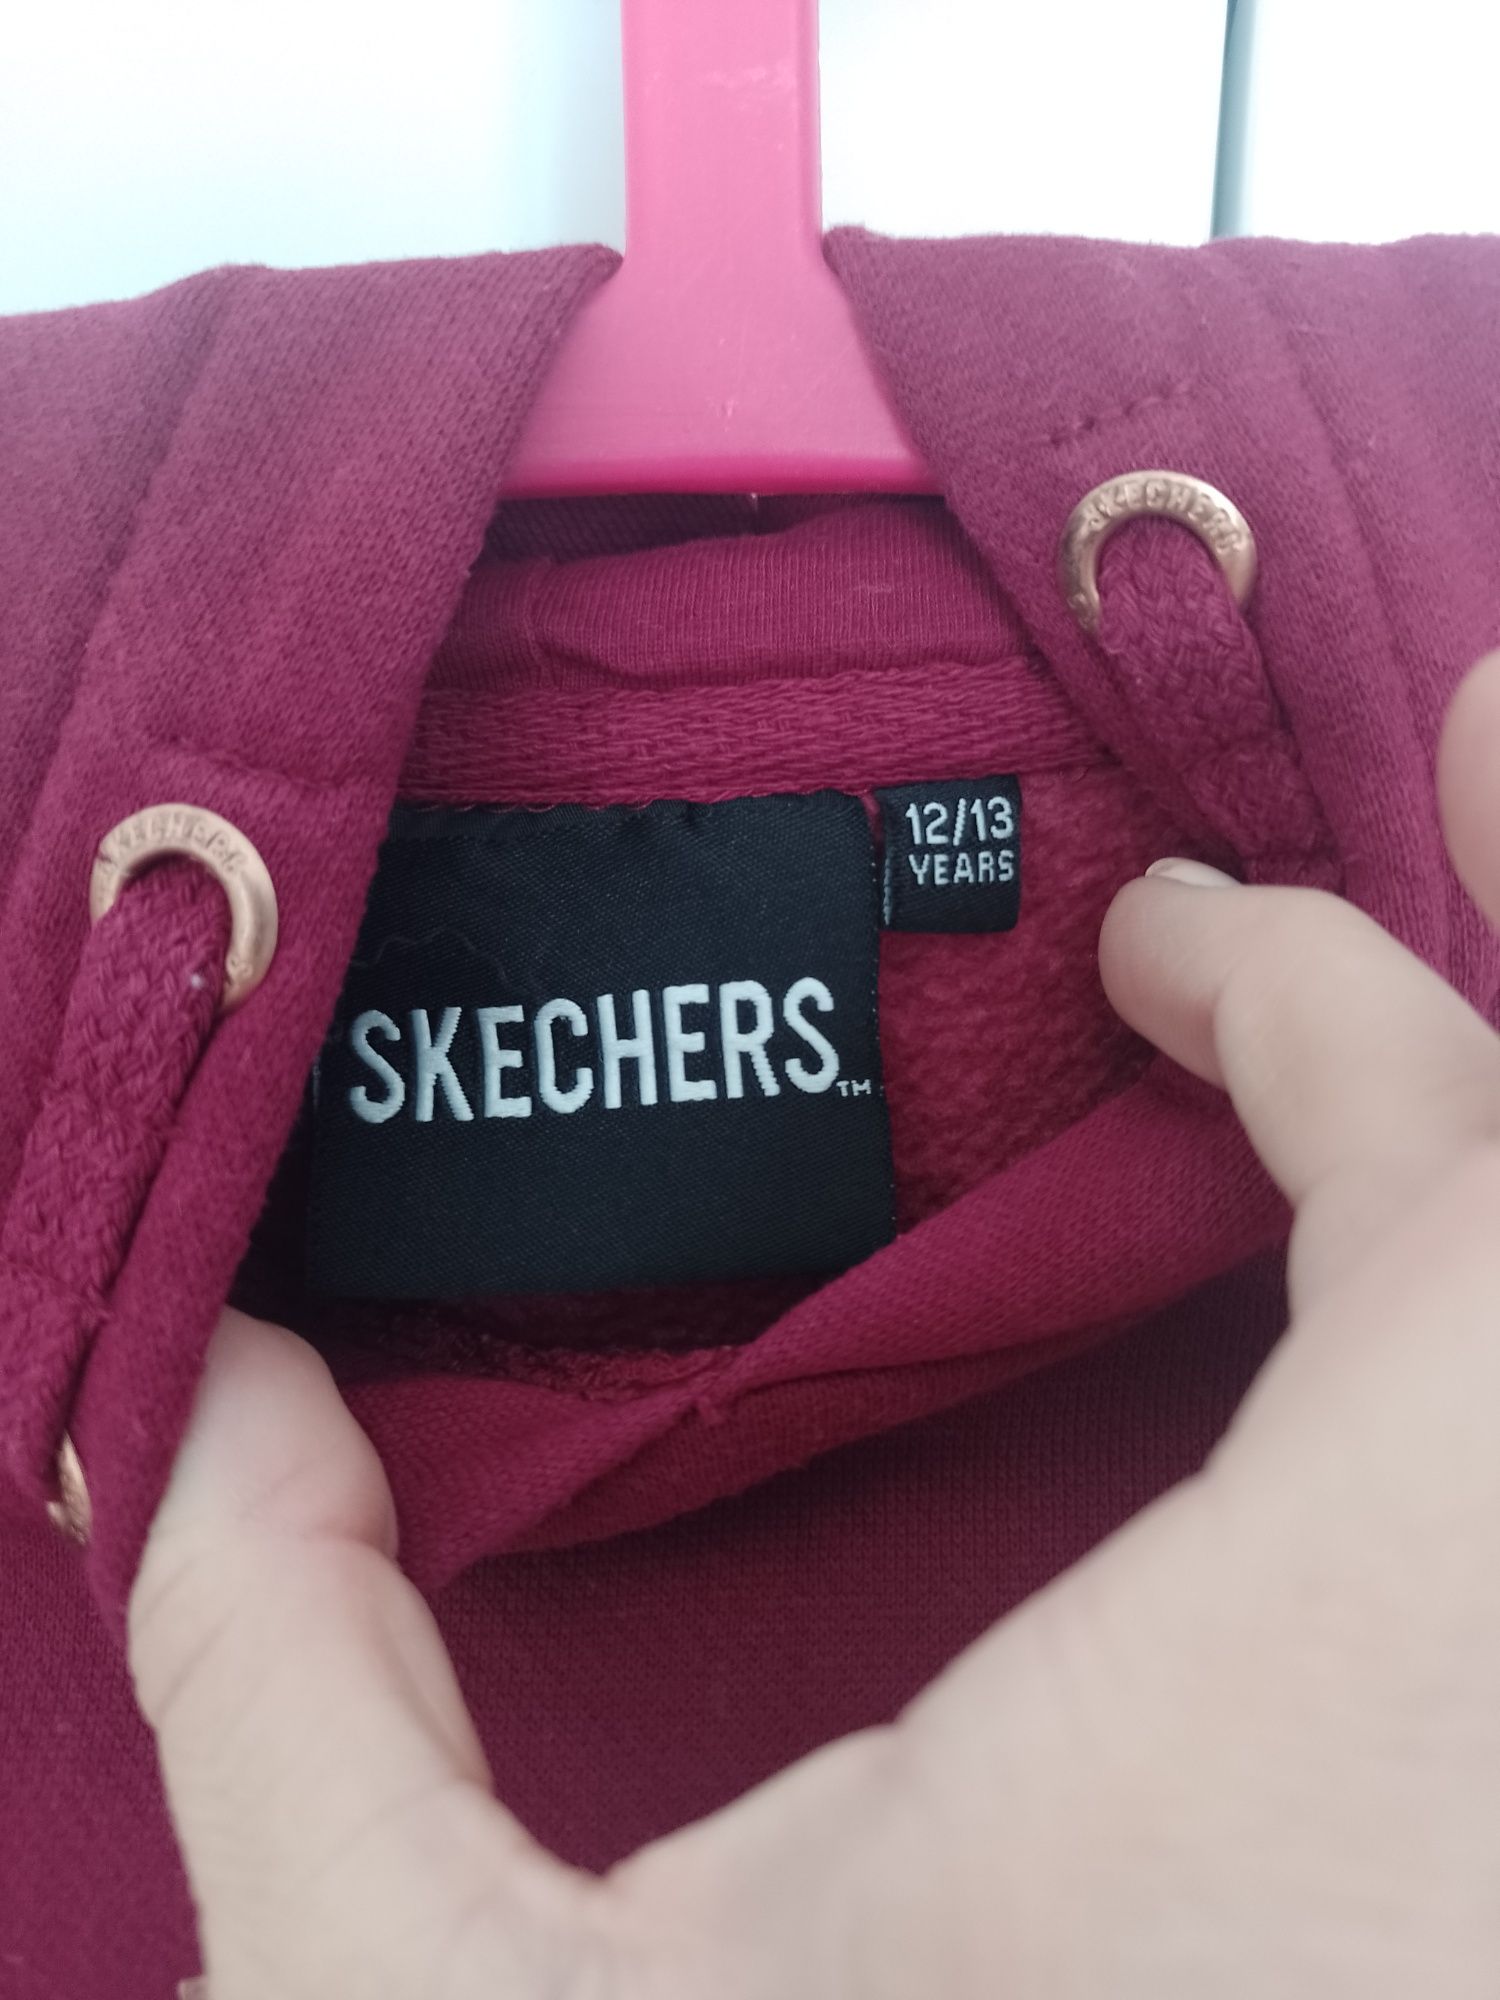 Skecherd bluza dla dziewczynki roz 12-13 Lat 152-158 cm